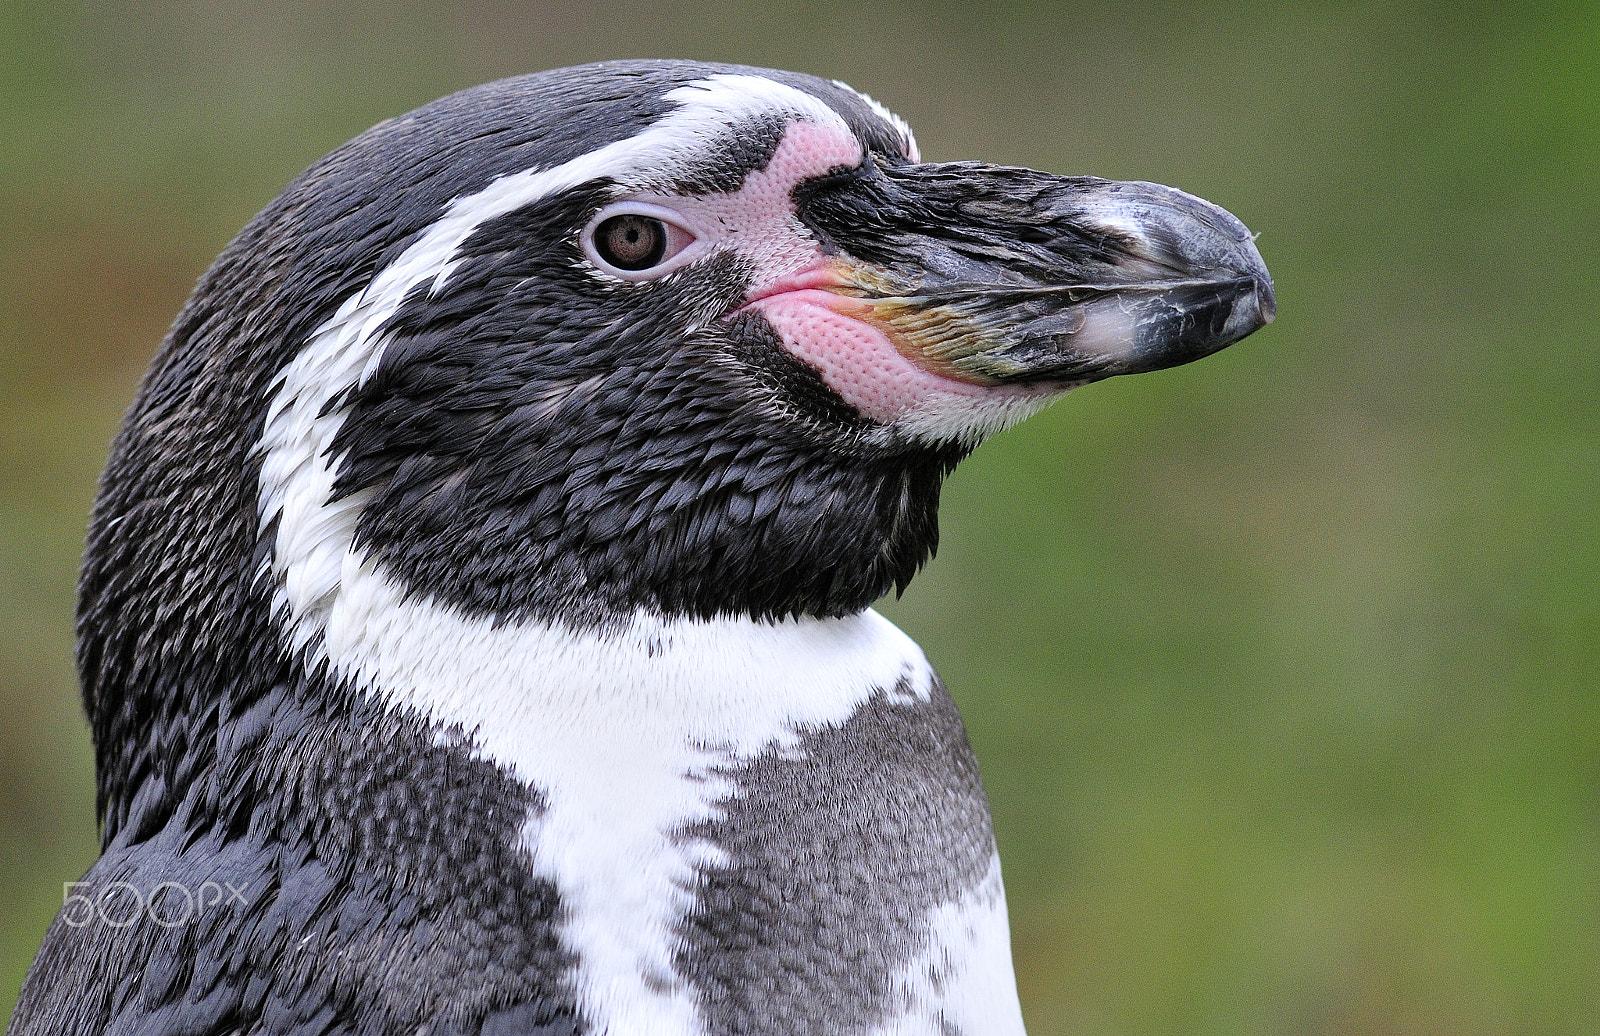 AF Nikkor 300mm f/2.8 IF-ED N sample photo. Humbolt pinguin photography